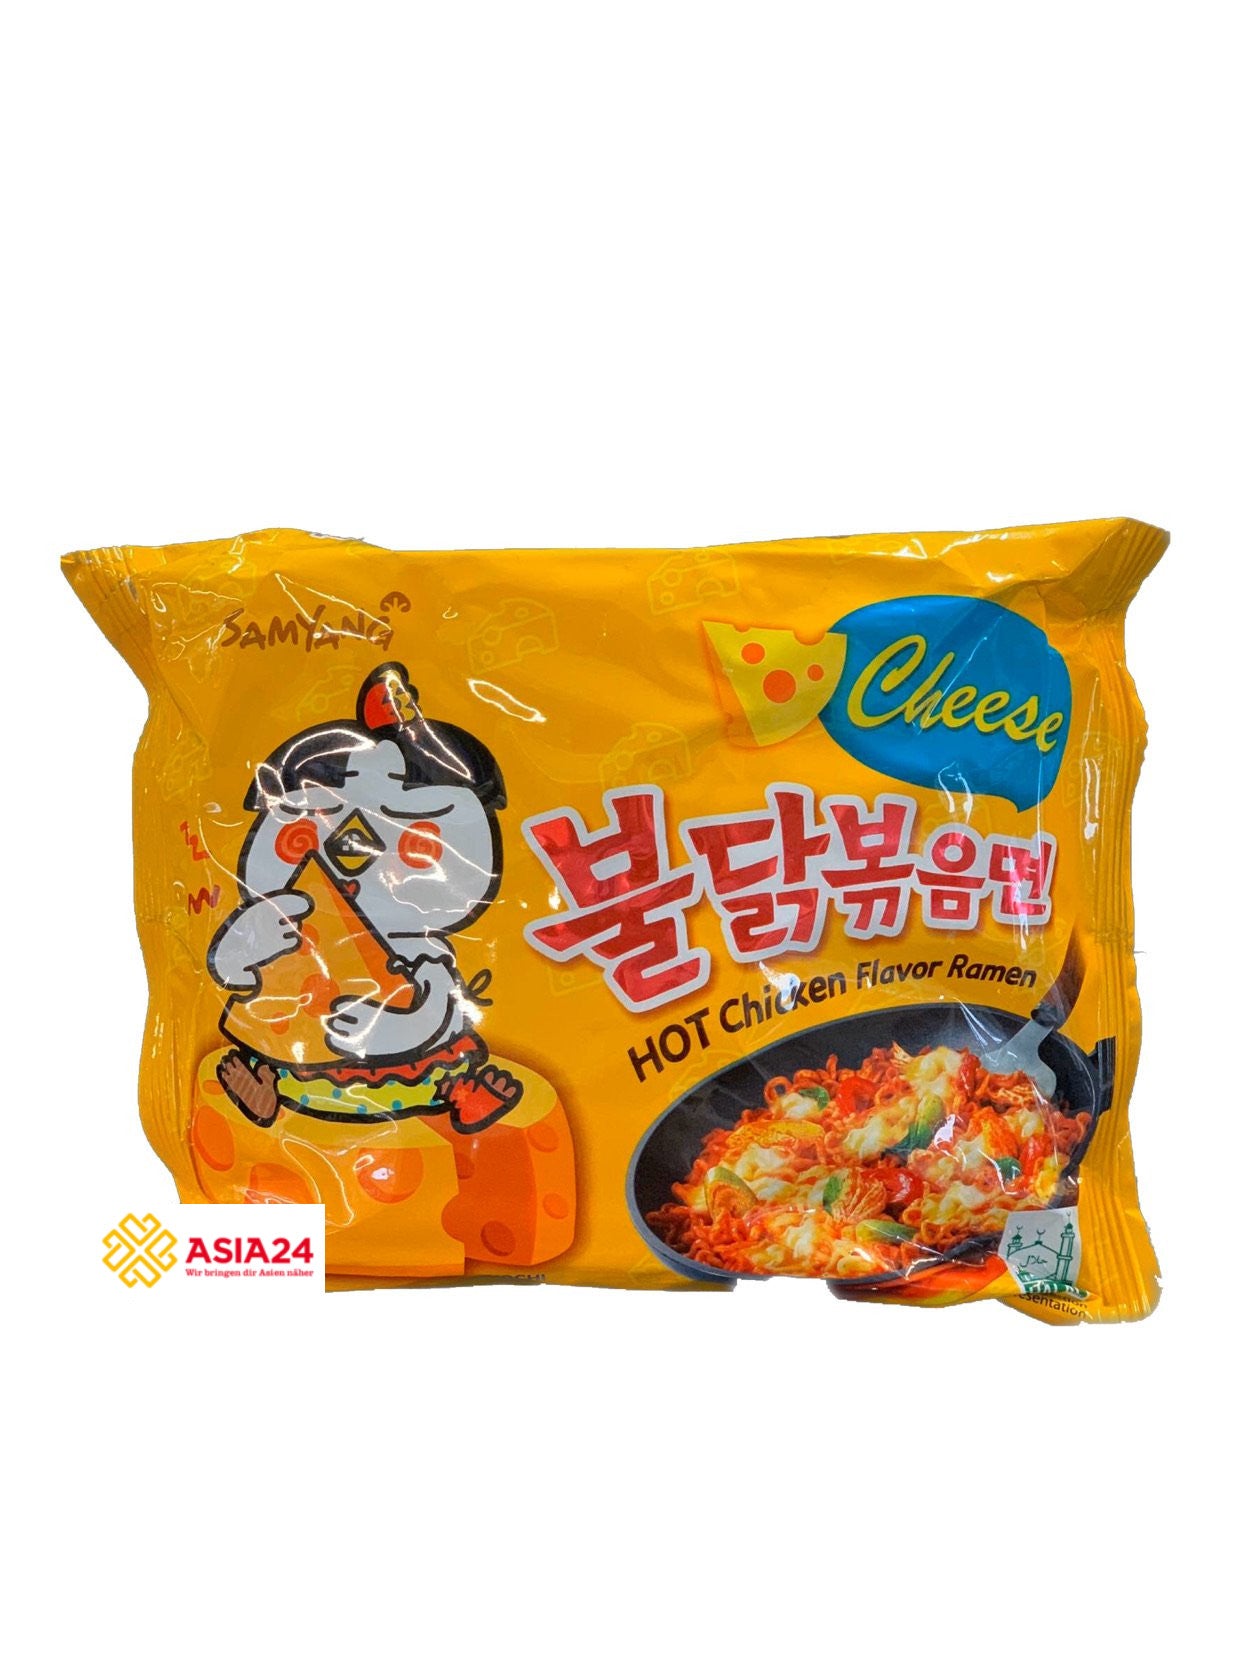 Hot Chicken Flavor Ramen Samyang Cheese 120g- Mì gà cay vị Pho mai (VÀNG) 120g